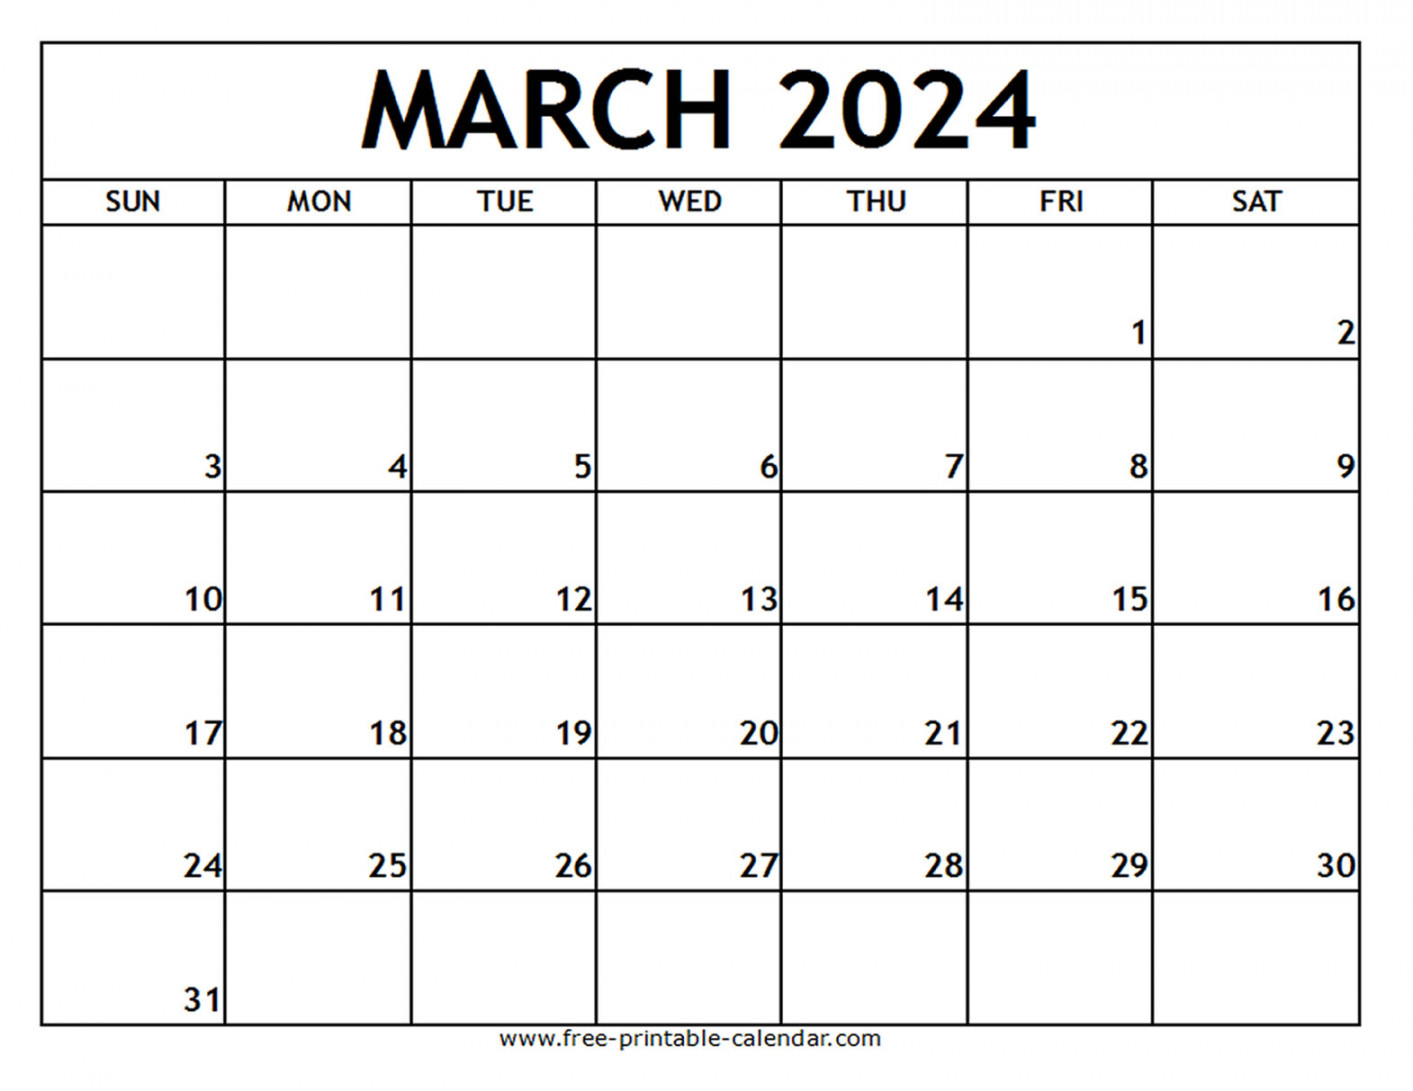 march printable calendar free printable calendar com 13